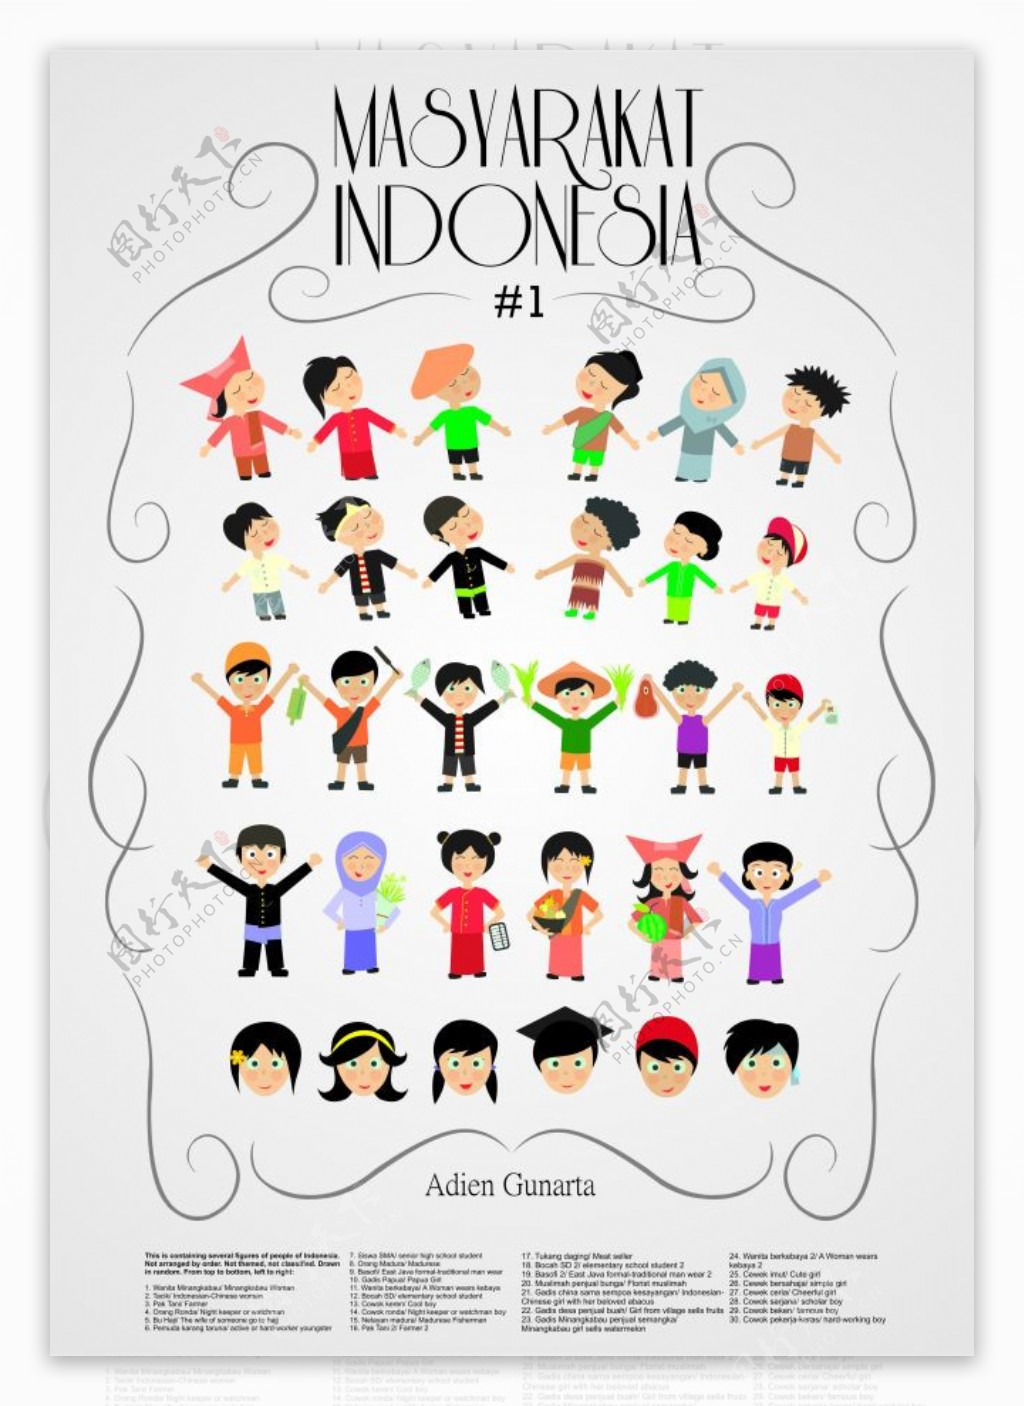 卡通风格印尼masyar